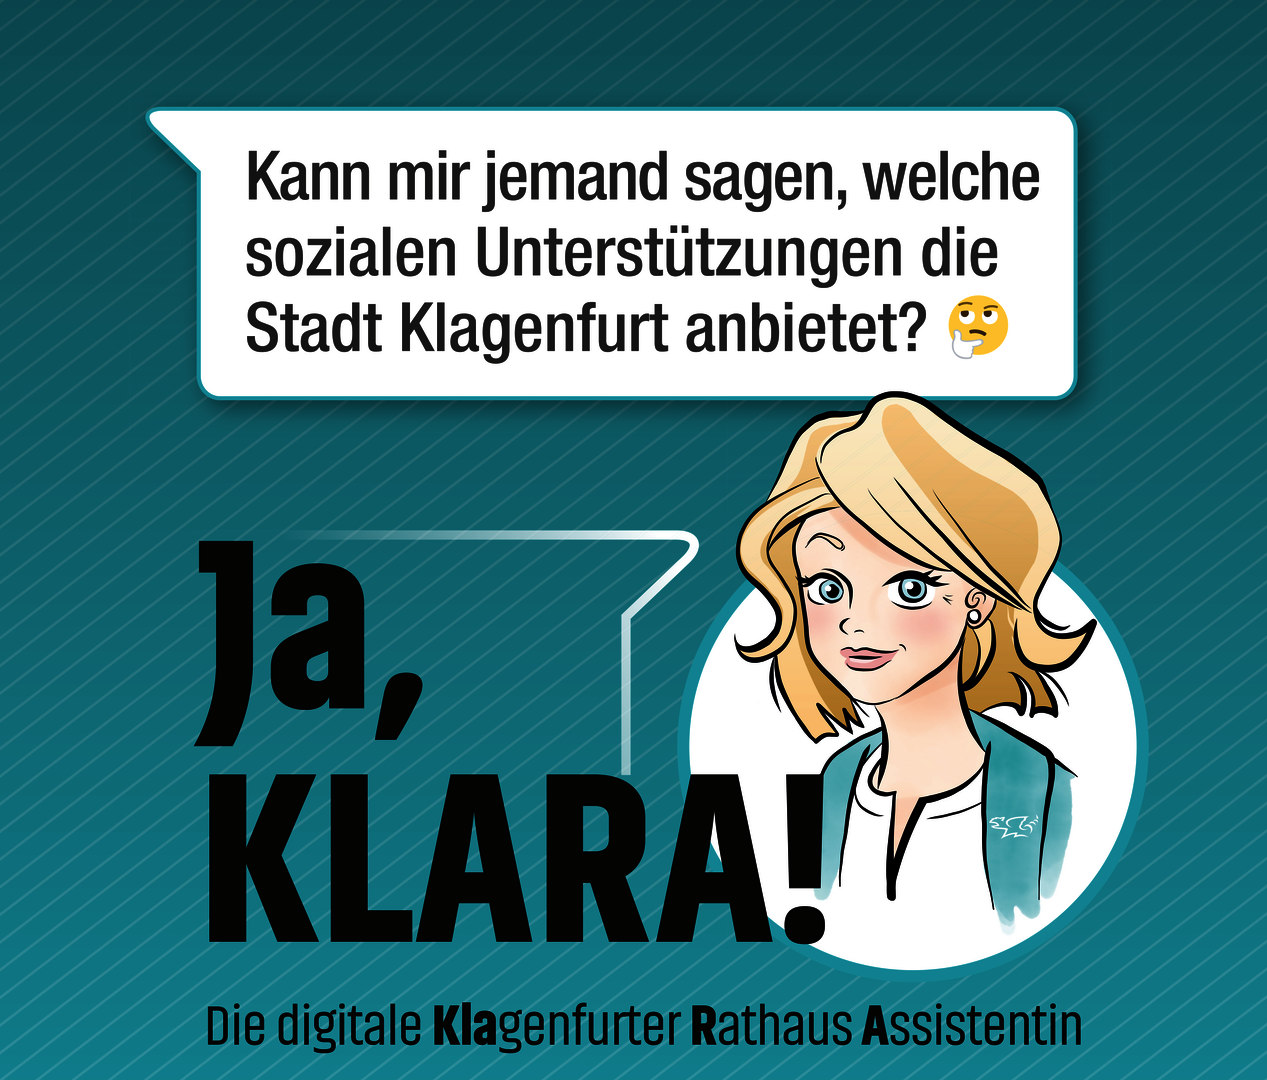 Klara beantwortet gerne Ihre Fragen. 